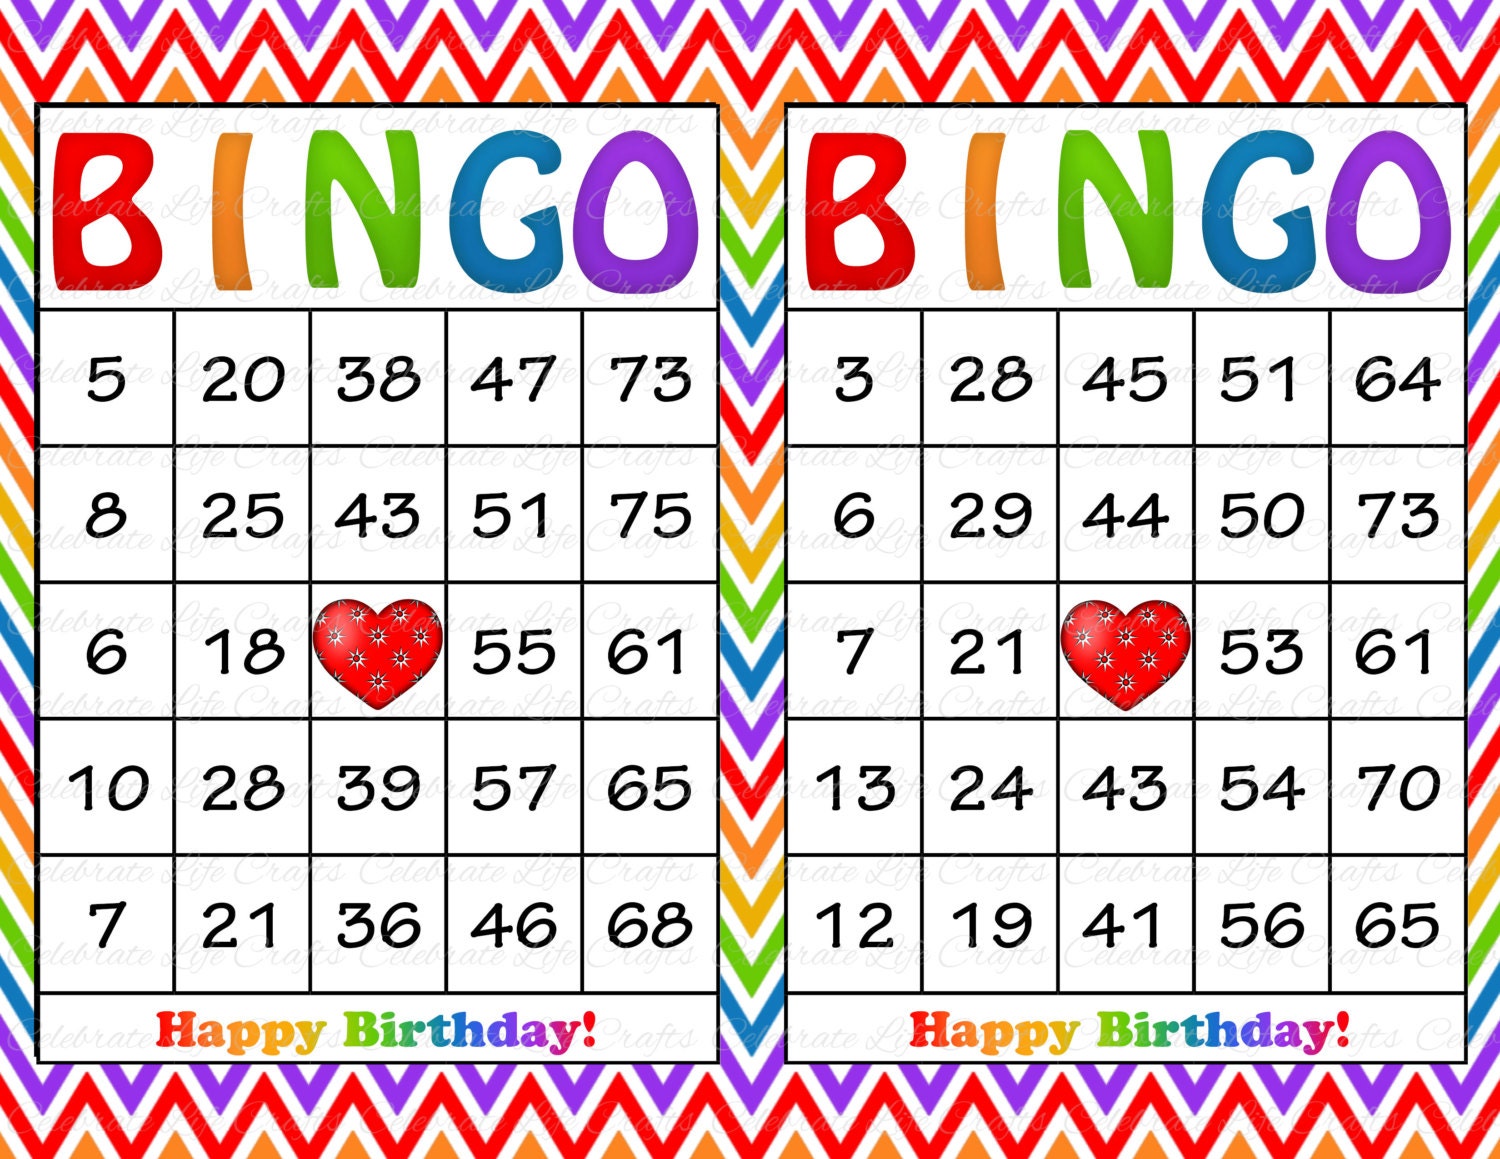 printable-birthday-bingo-printable-world-holiday